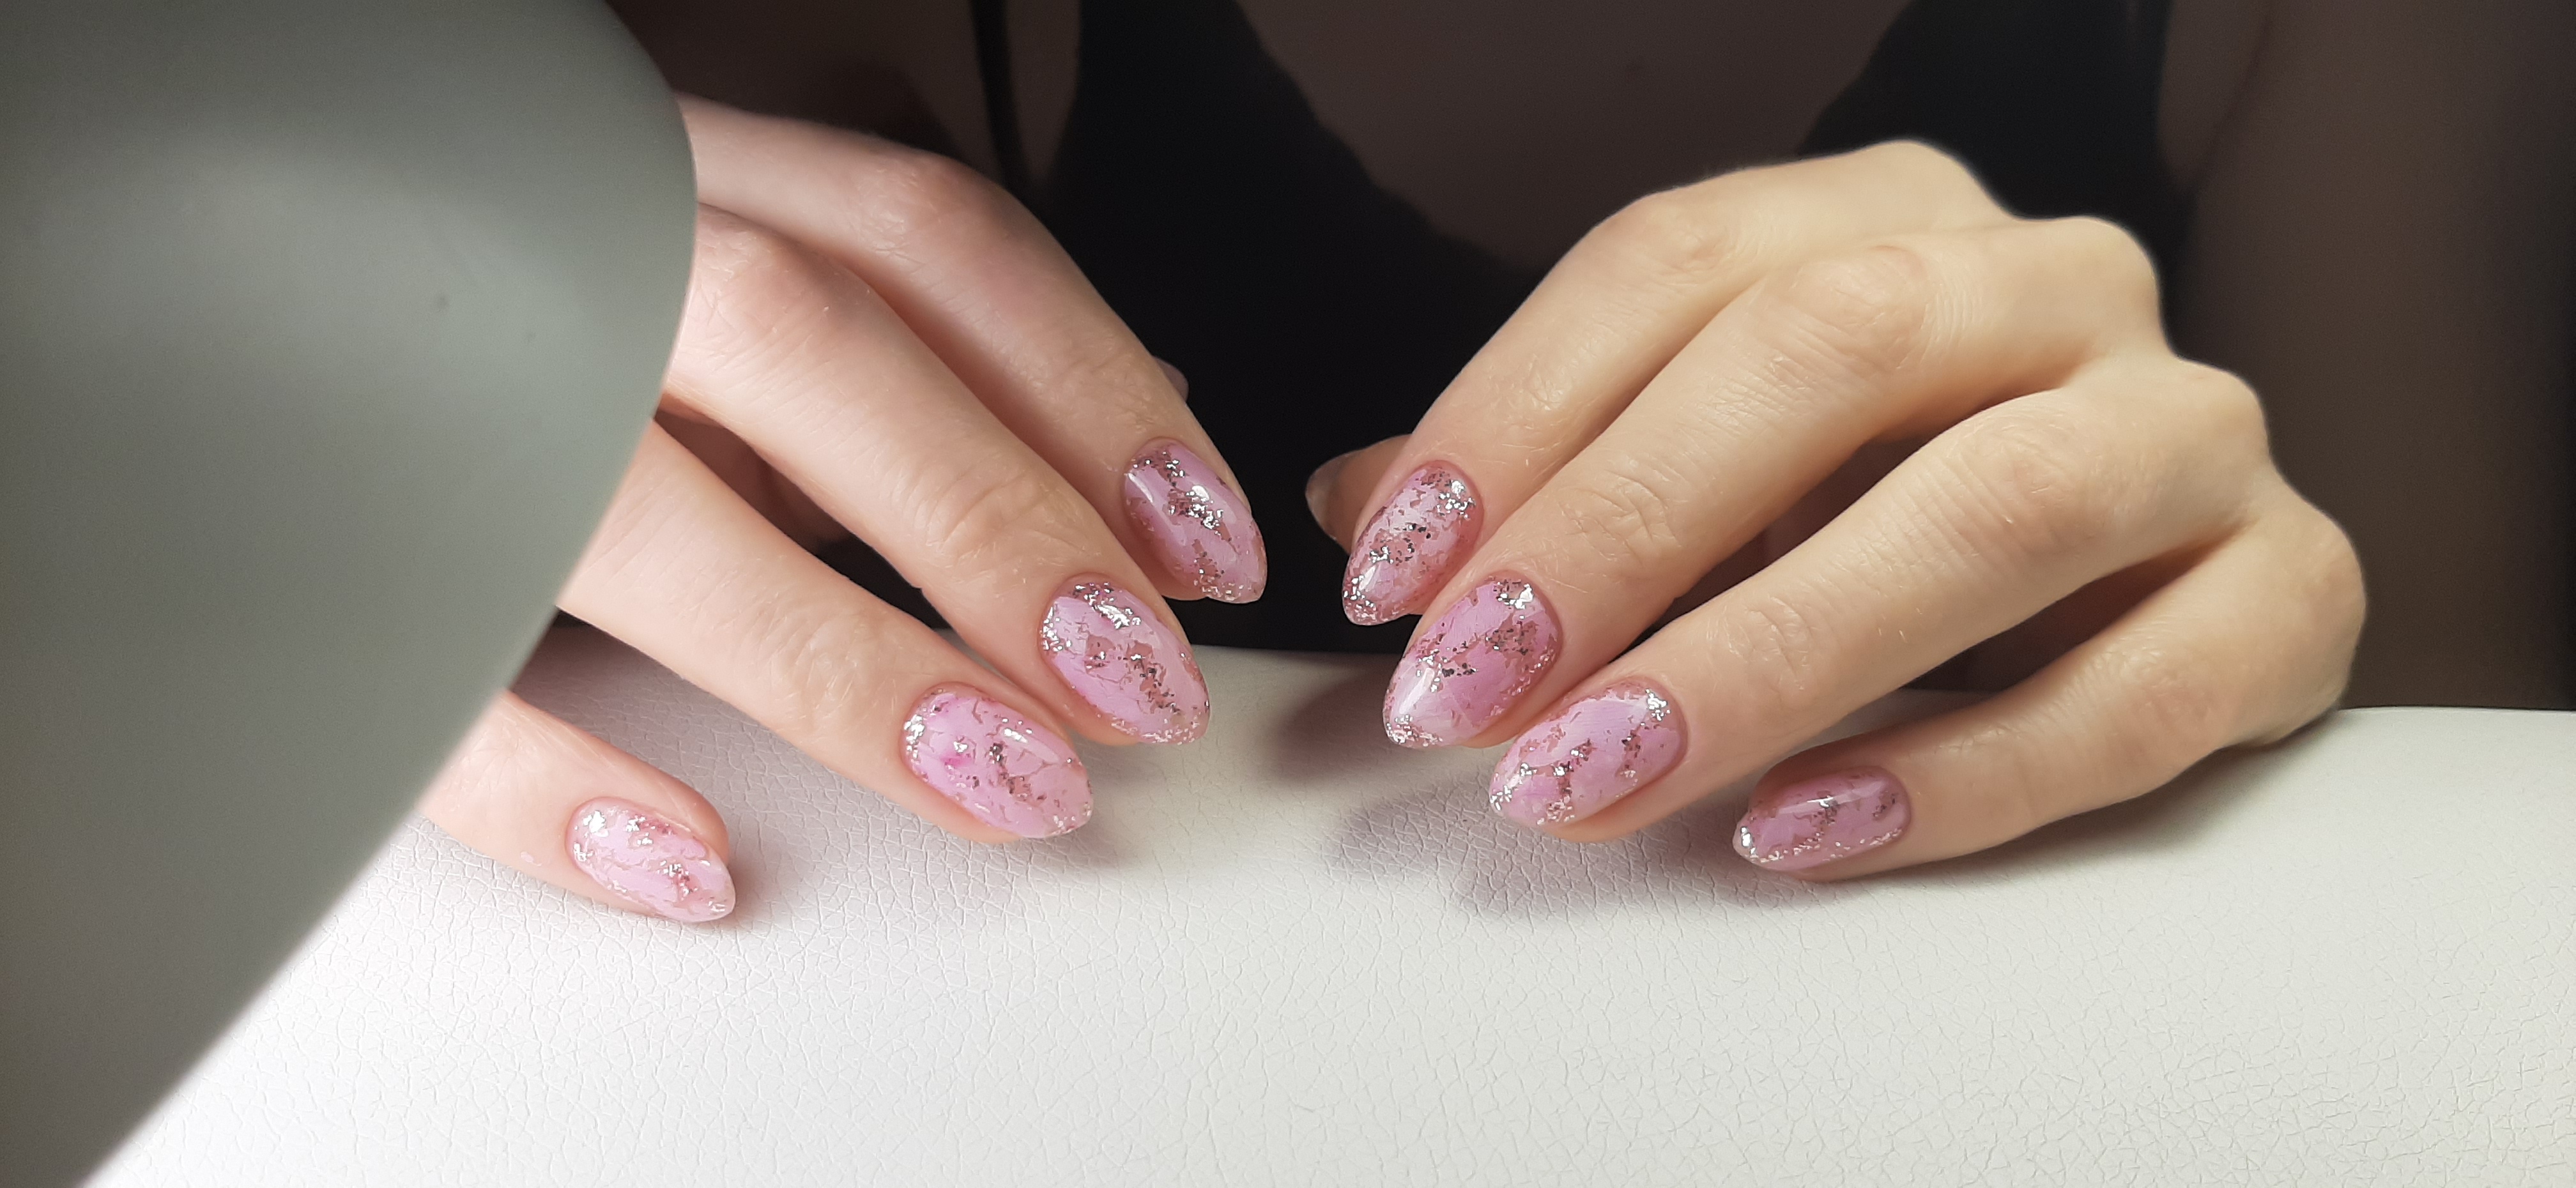 Мраморный маникюр в розовом цвете на короткие ногти.